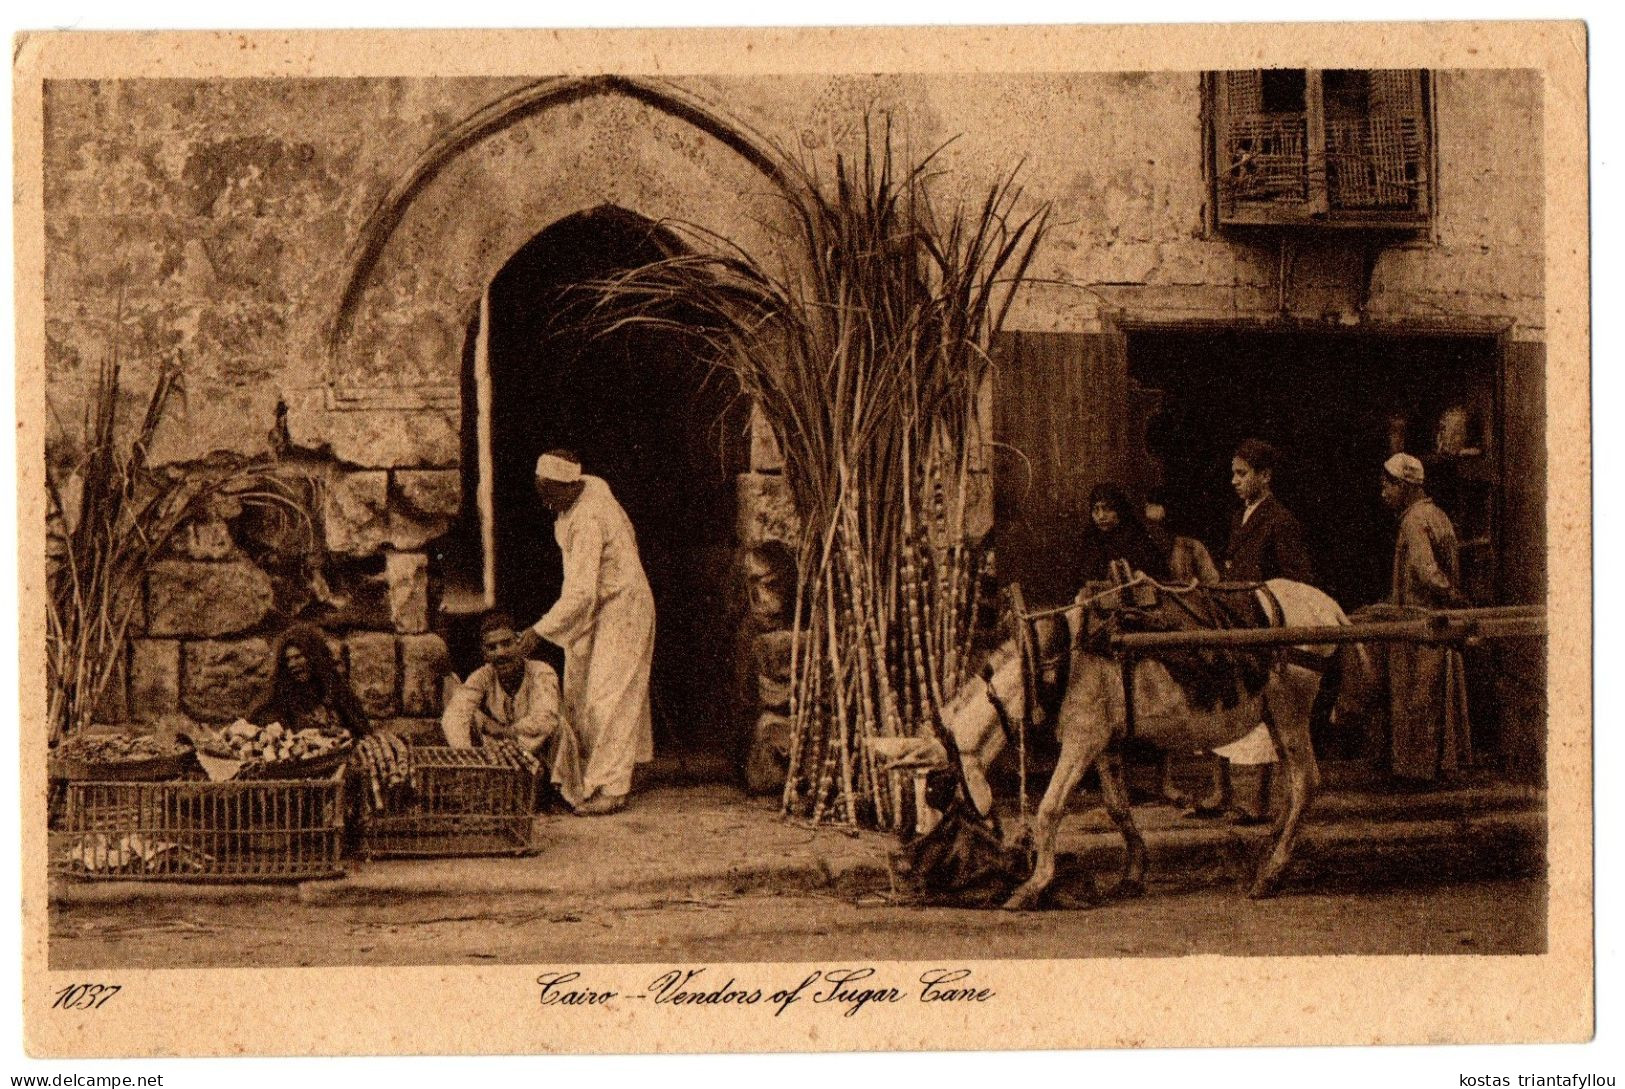 4.1.12 EGYPT, CAIRO, VENDORS OF SUGAR CANE, 1928, POSTCARD - Cairo